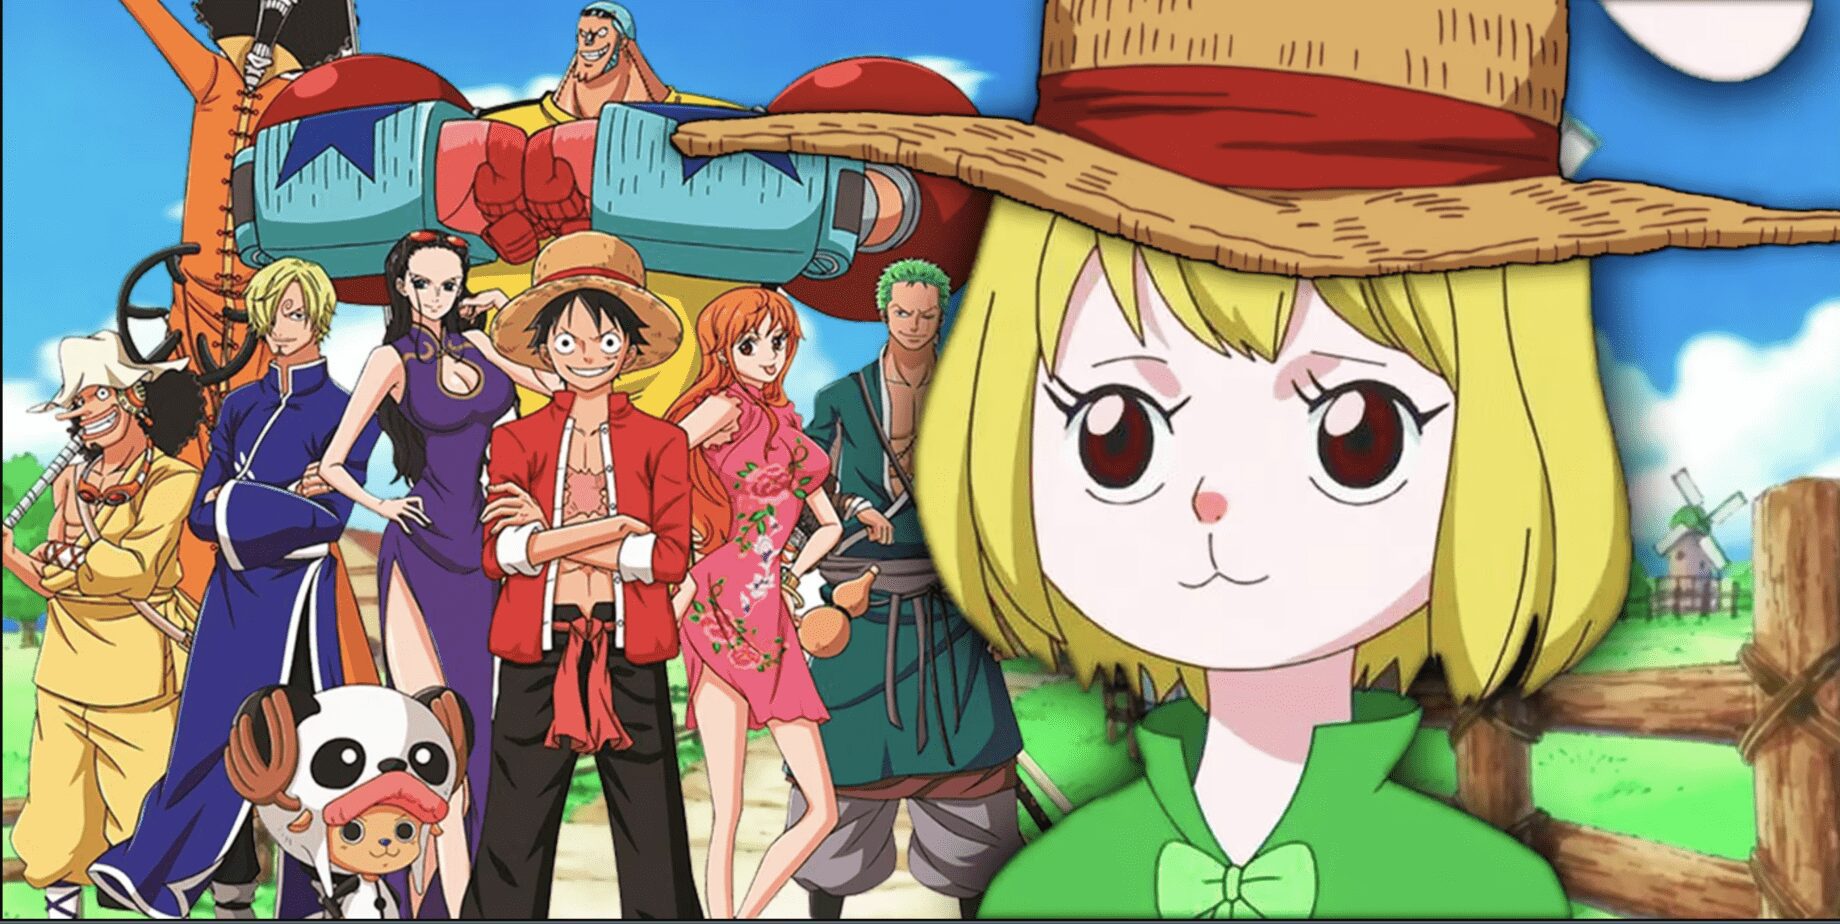 One Piece Chapitre 1059 : Carrot se faufile chez les Pirates du Chapeau de Paille, Luffy obtient un autre nouveau membre ? 3 2022 09 01 51